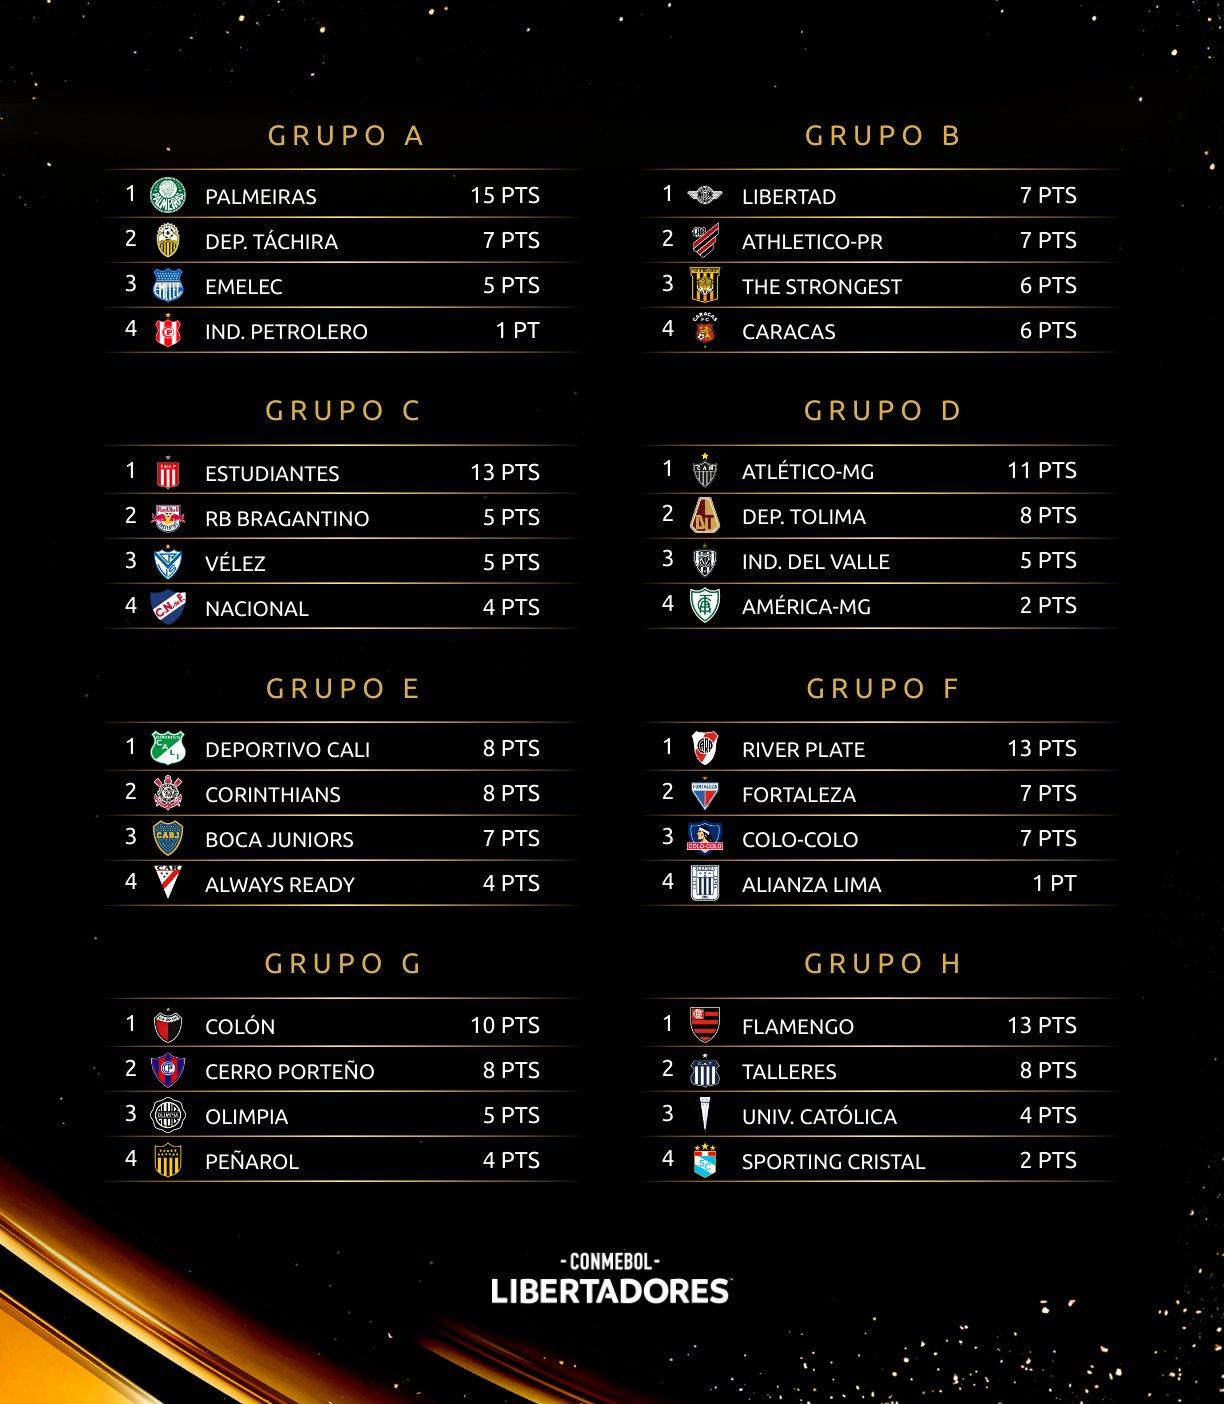 Imagem da tabela da Libertadores divulgada pela Conmebol